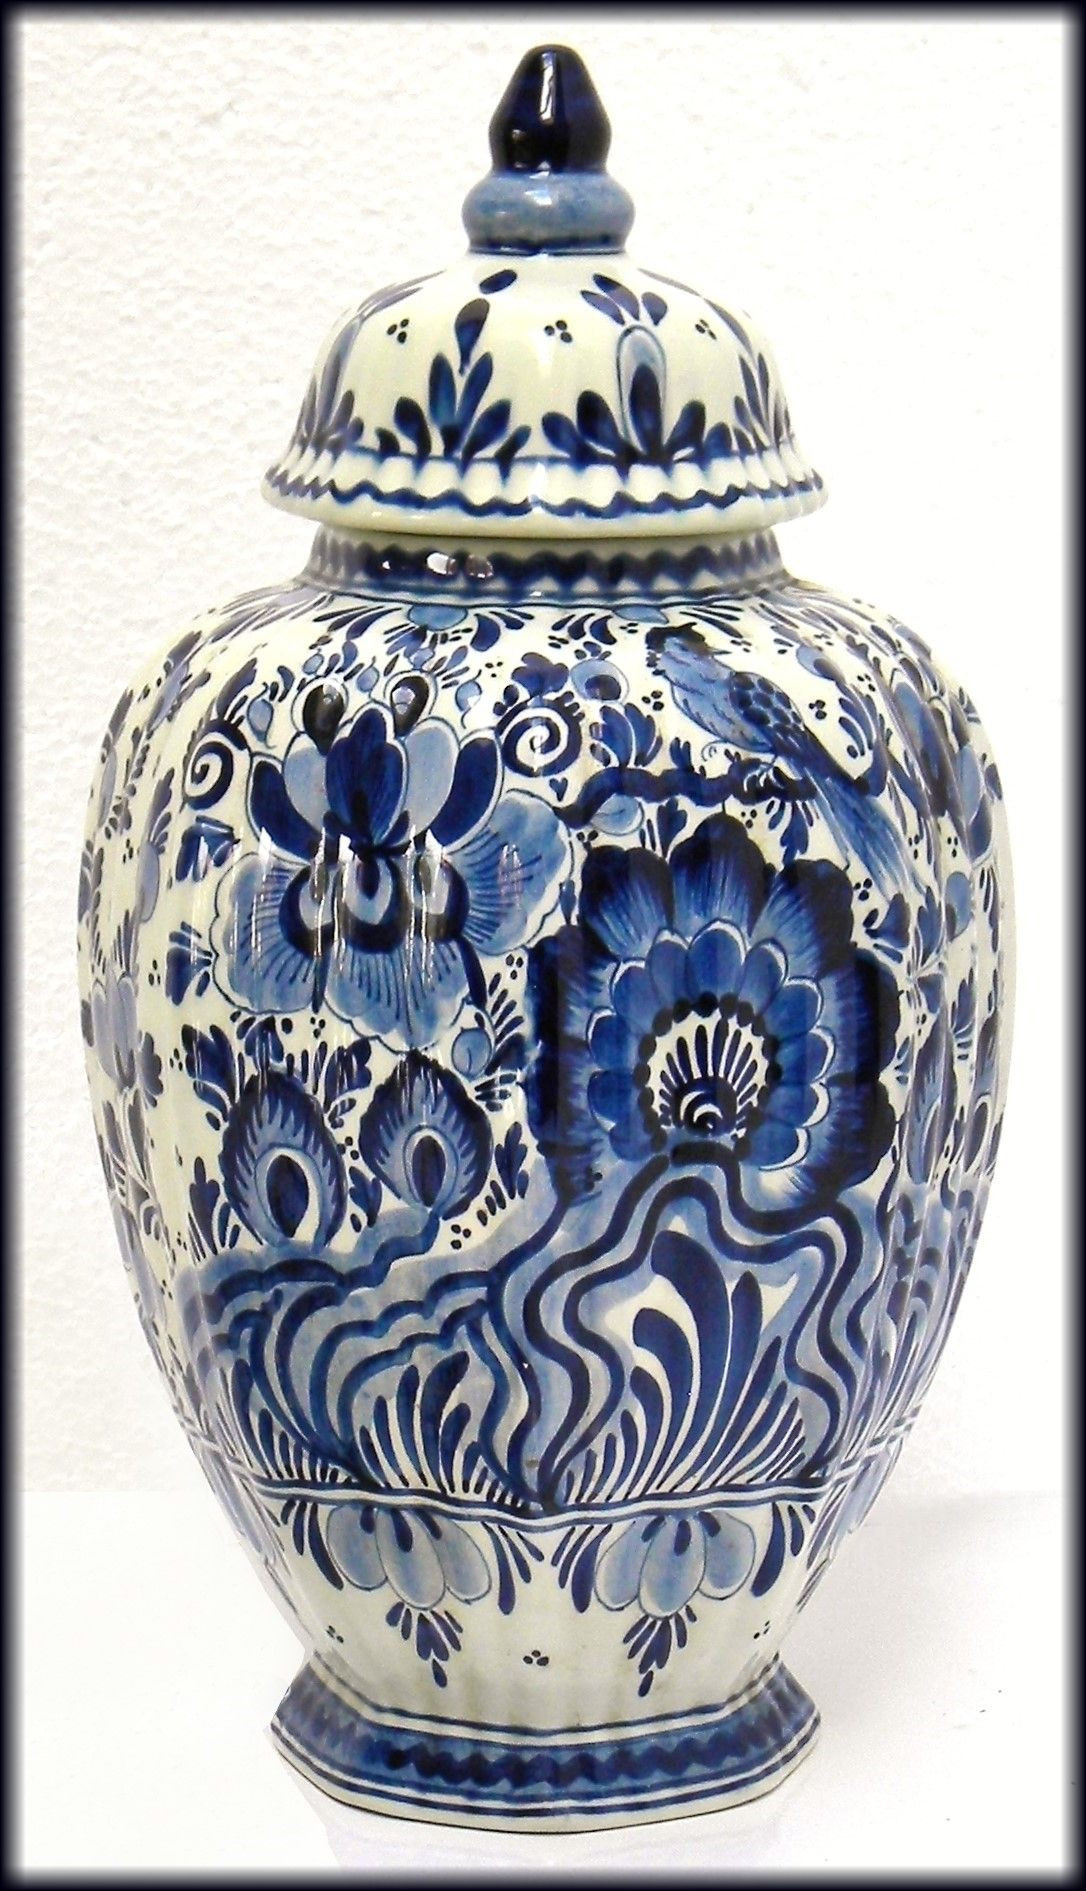 14 Popular Light Blue Vase 2022 free download light blue vase of vintage delft blue ceramic vase jar hand painted cobalt blue floral for amazing delft blue vintage dutch art pottery with cobalt blue bird and floral decoration